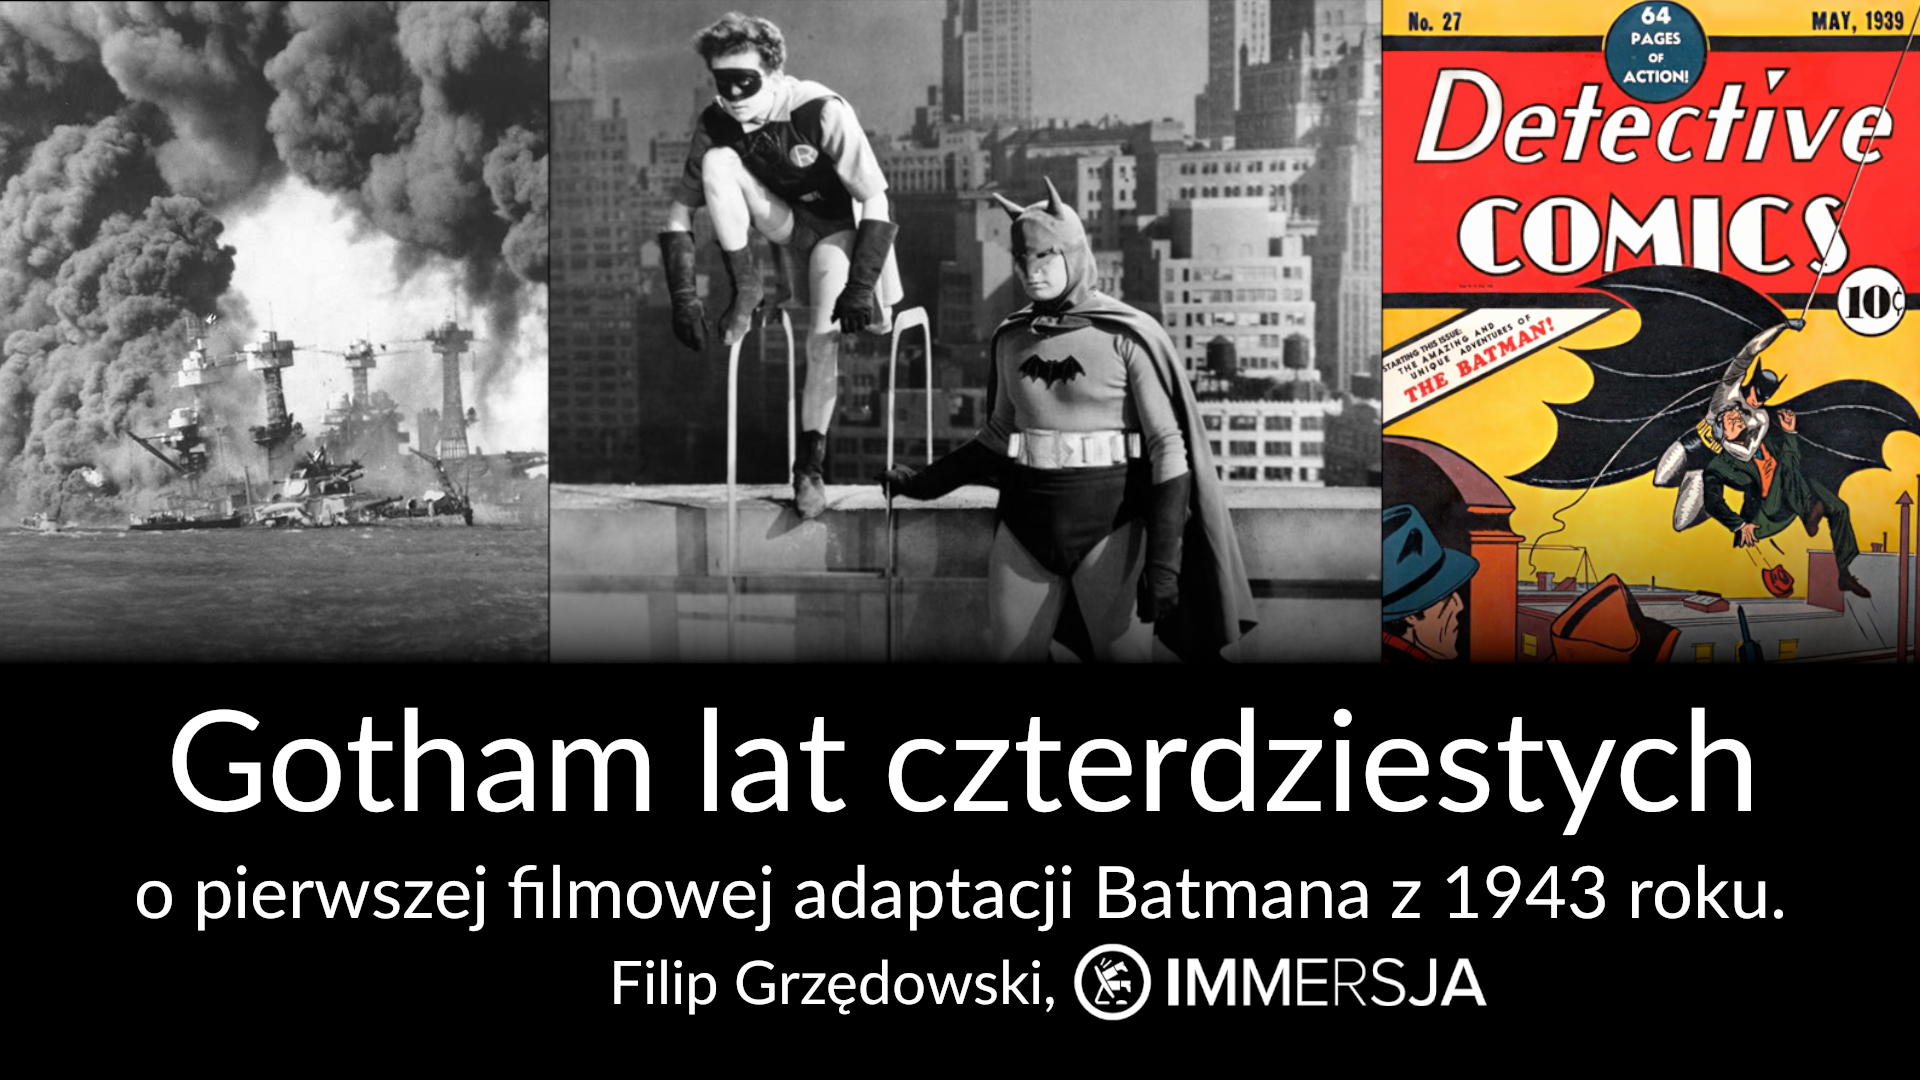 Gotham lat czterdziestych – nasza prelekcja na 34. Międzynarodowym Festiwalu Komiksu i Gier w Łodzi!